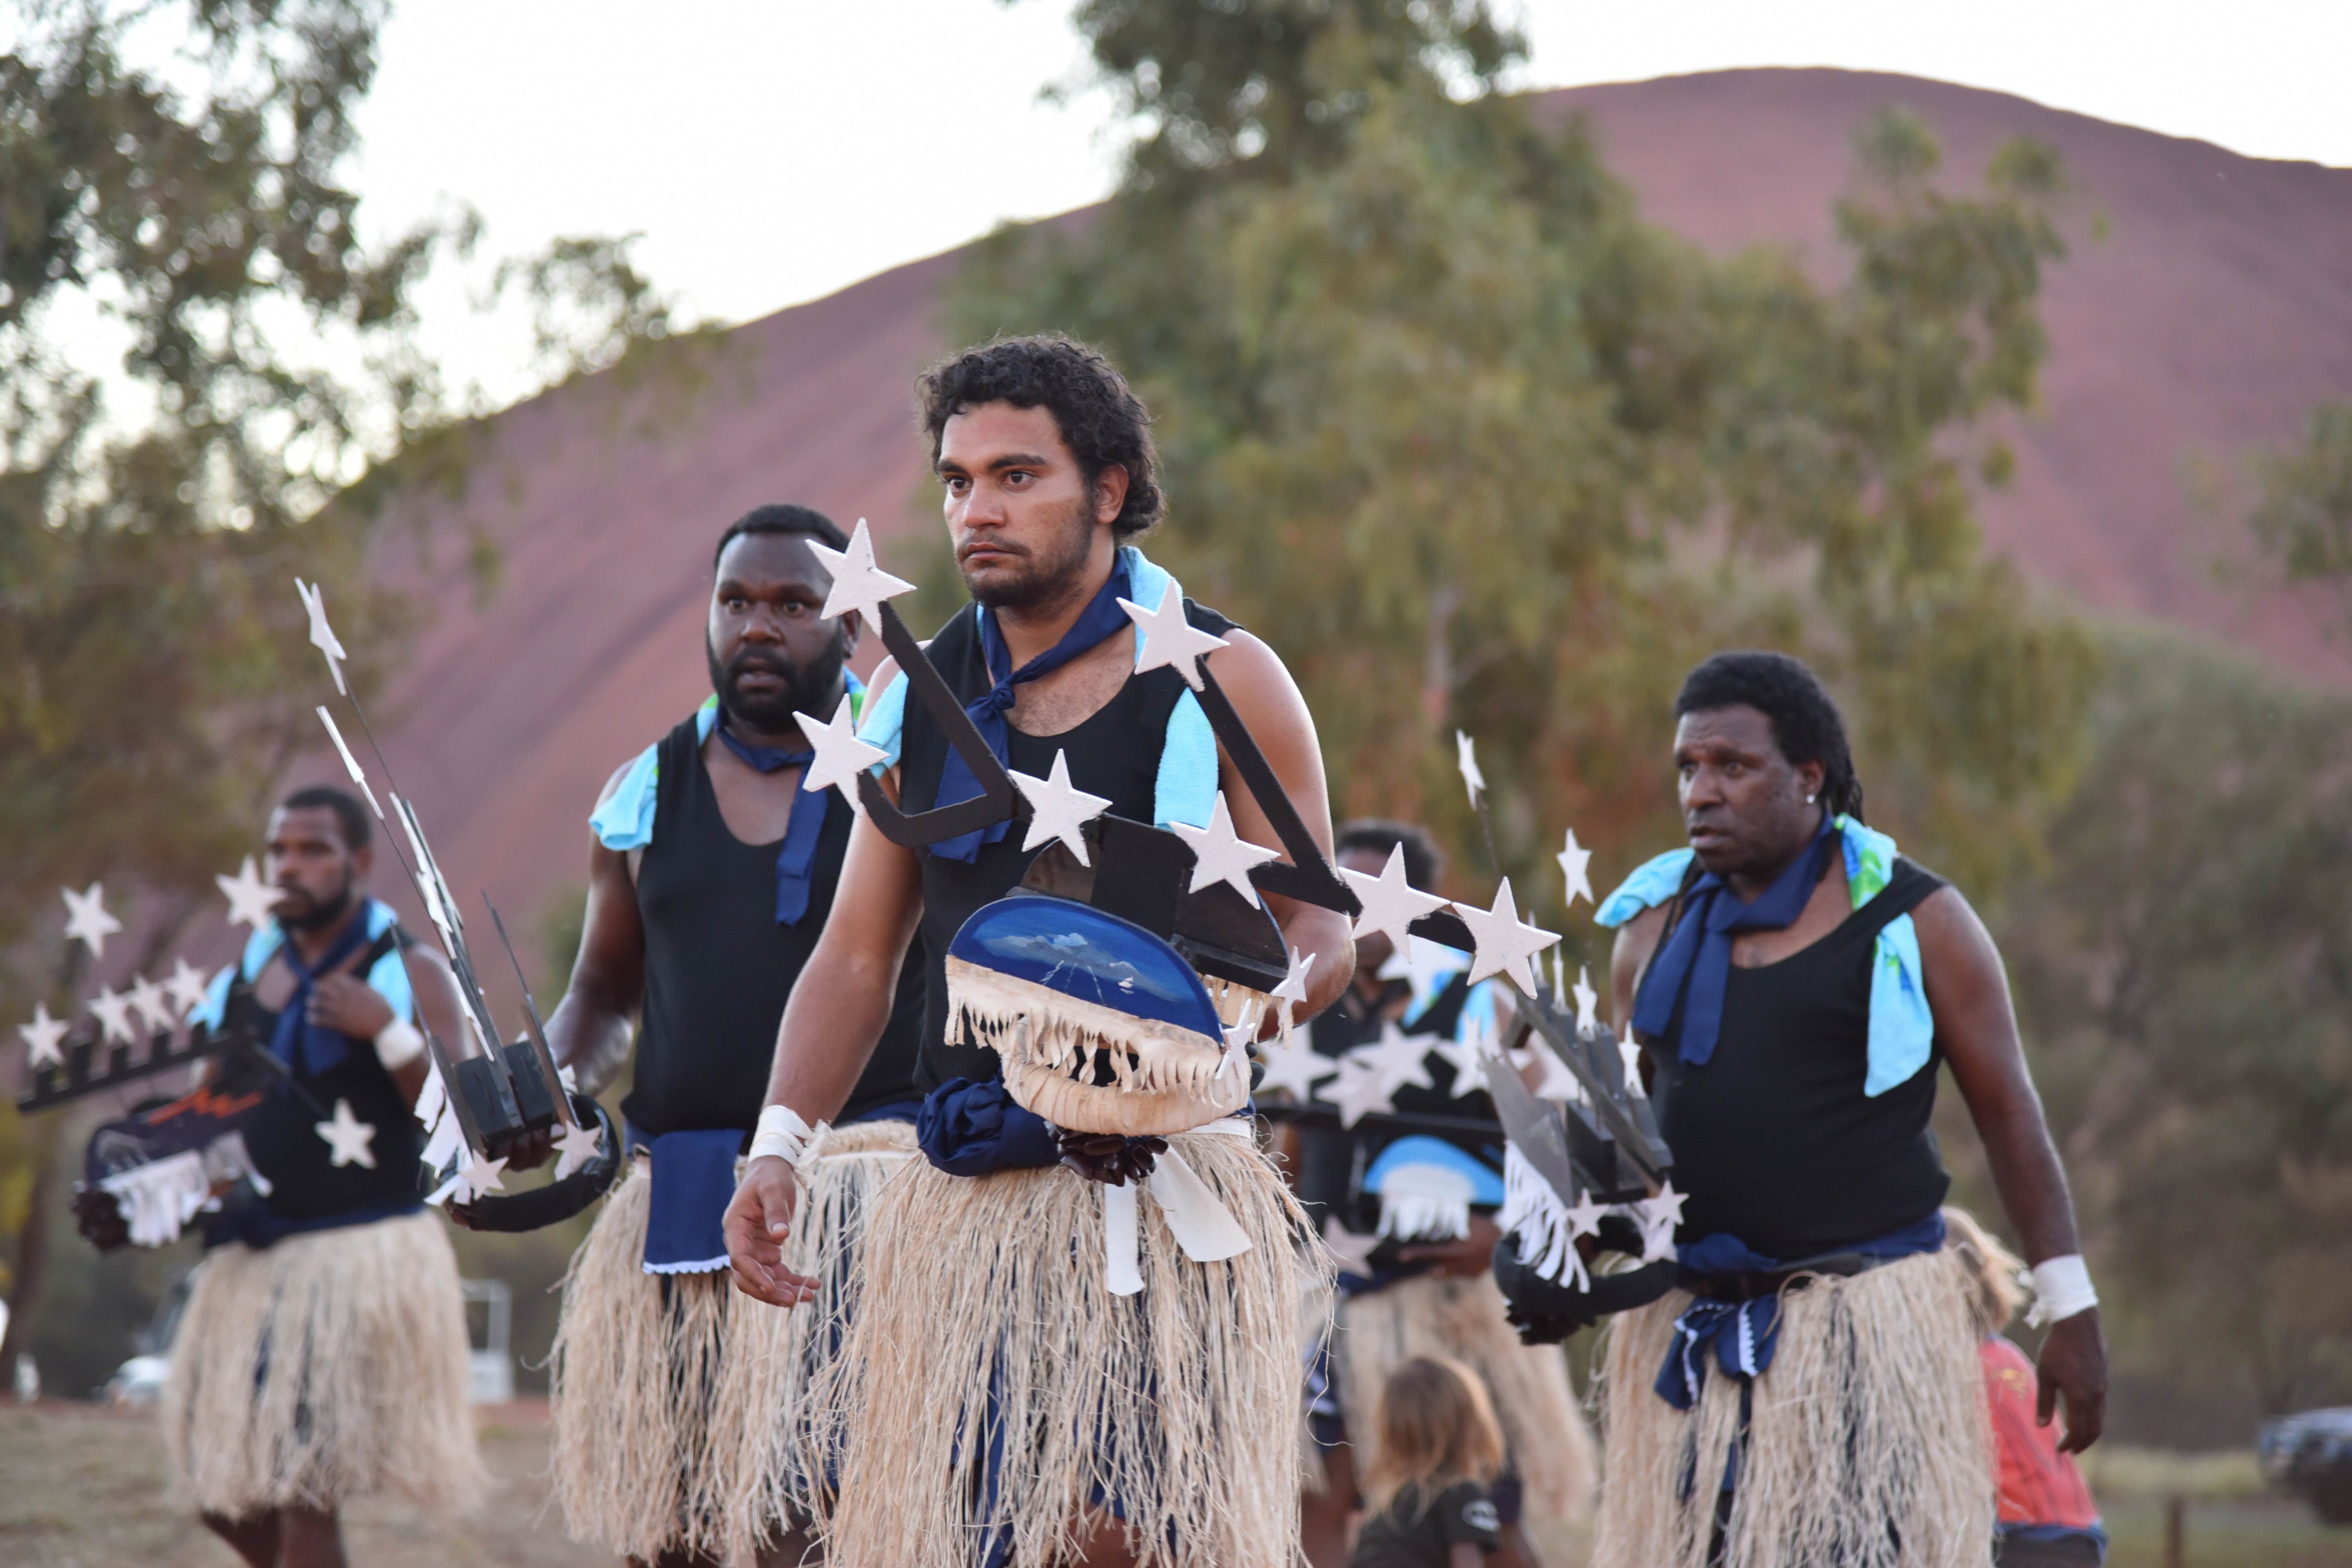 Οι Αβορίγινες και η ιστορική τους σύναξη στην Αυστραλία